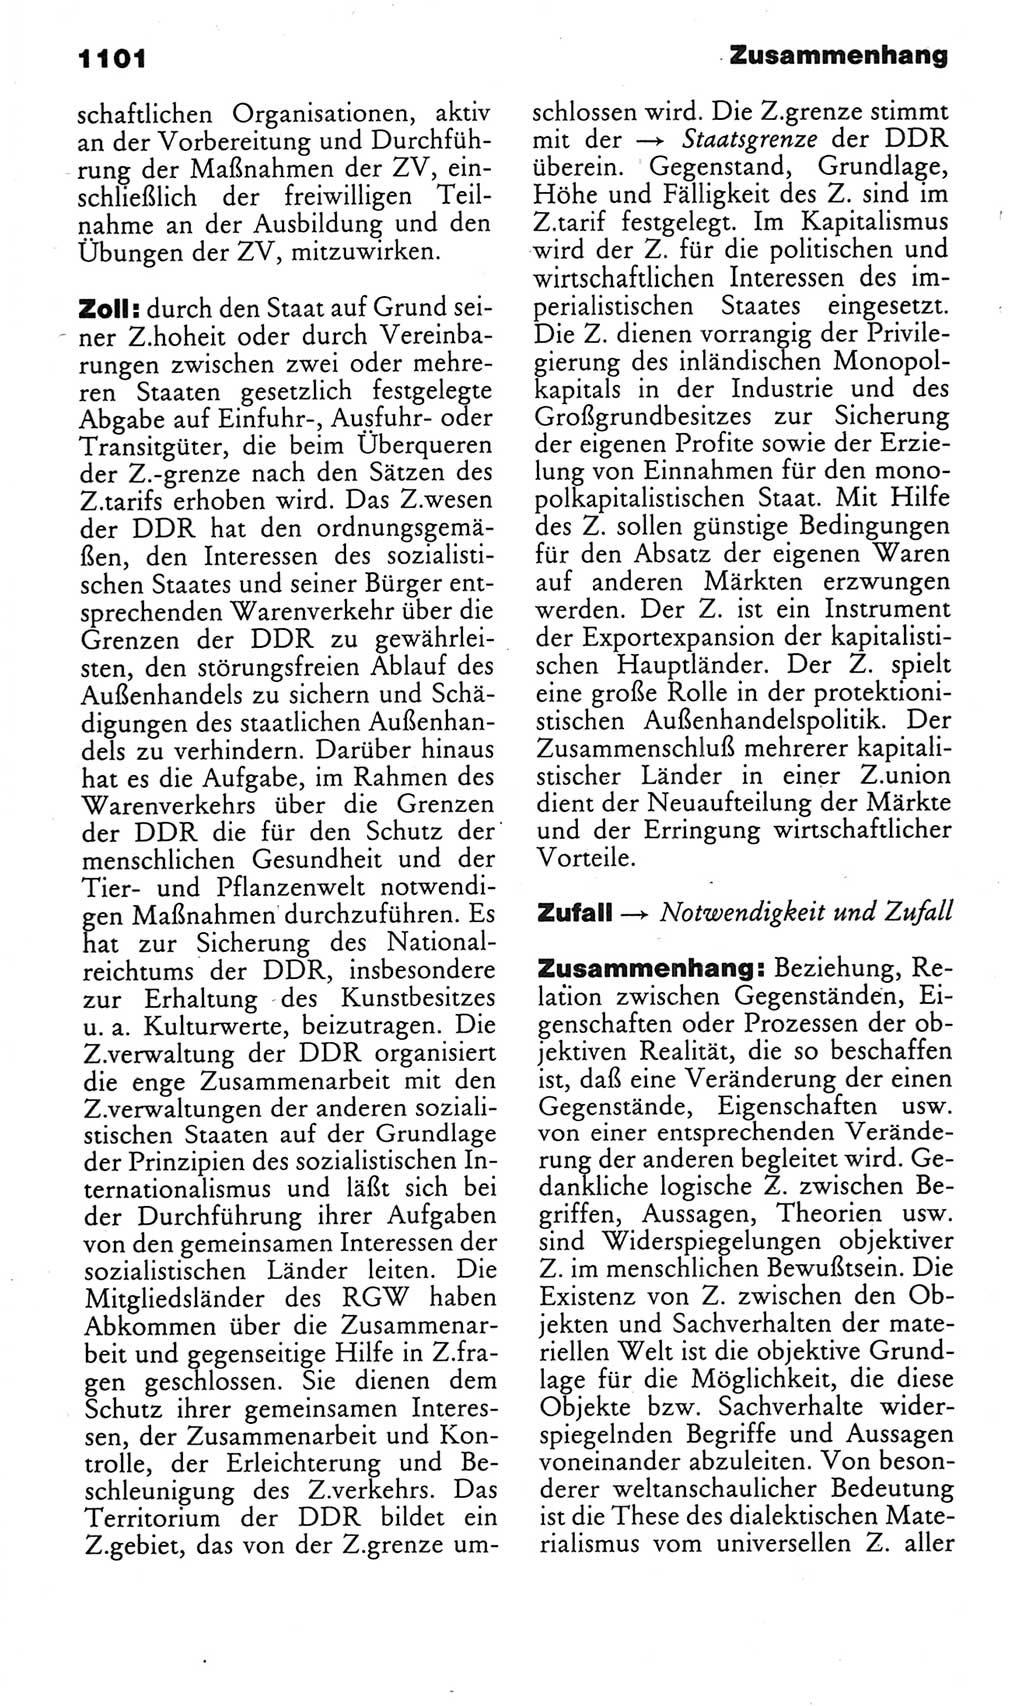 Kleines politisches Wörterbuch [Deutsche Demokratische Republik (DDR)] 1985, Seite 1101 (Kl. pol. Wb. DDR 1985, S. 1101)